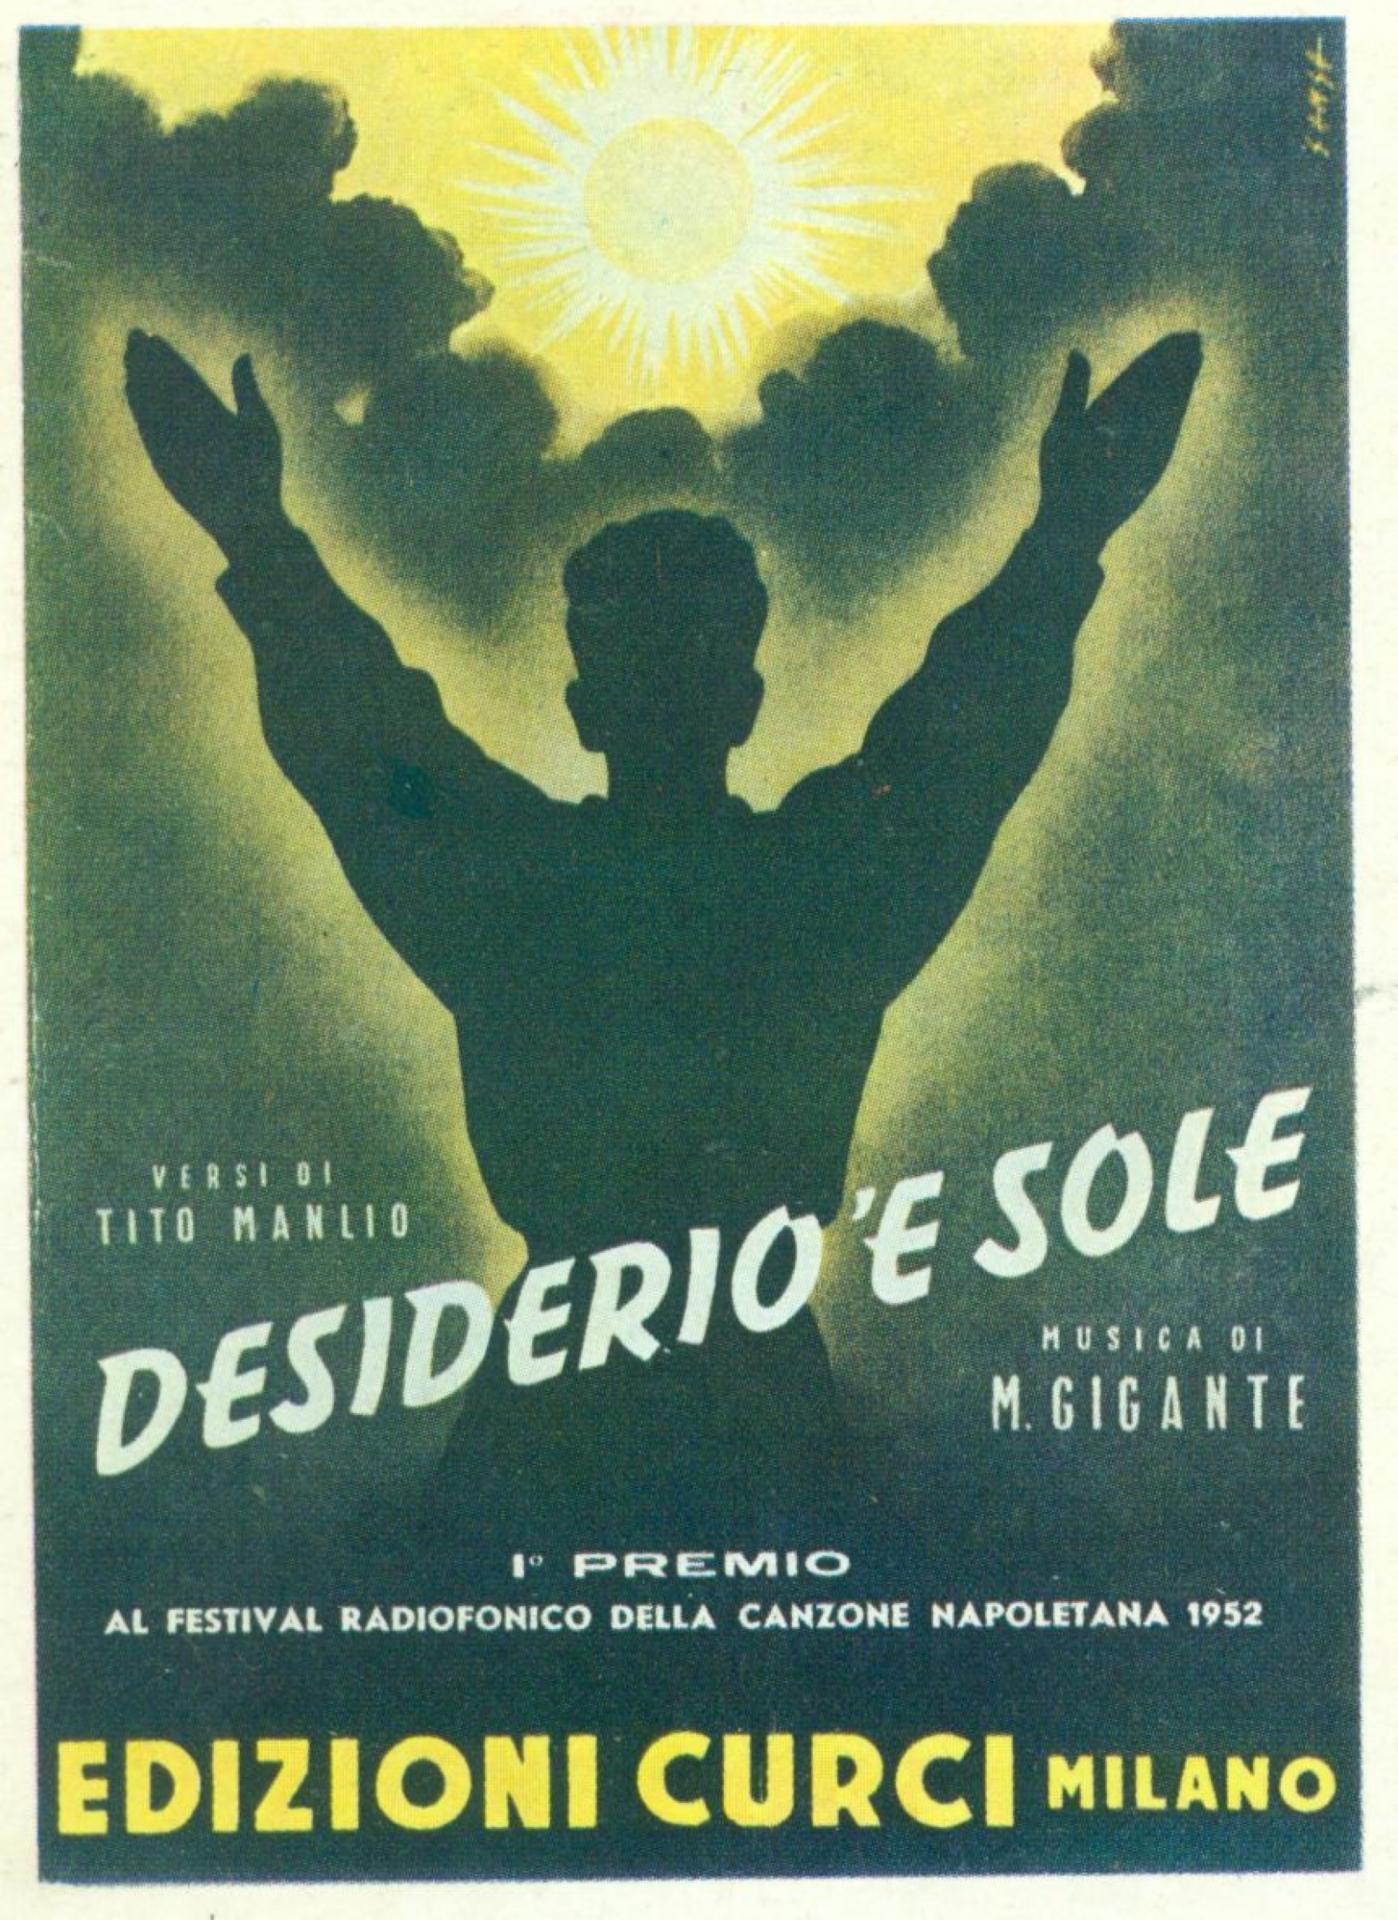 Desiderio 'e sole 1952 frontespizio